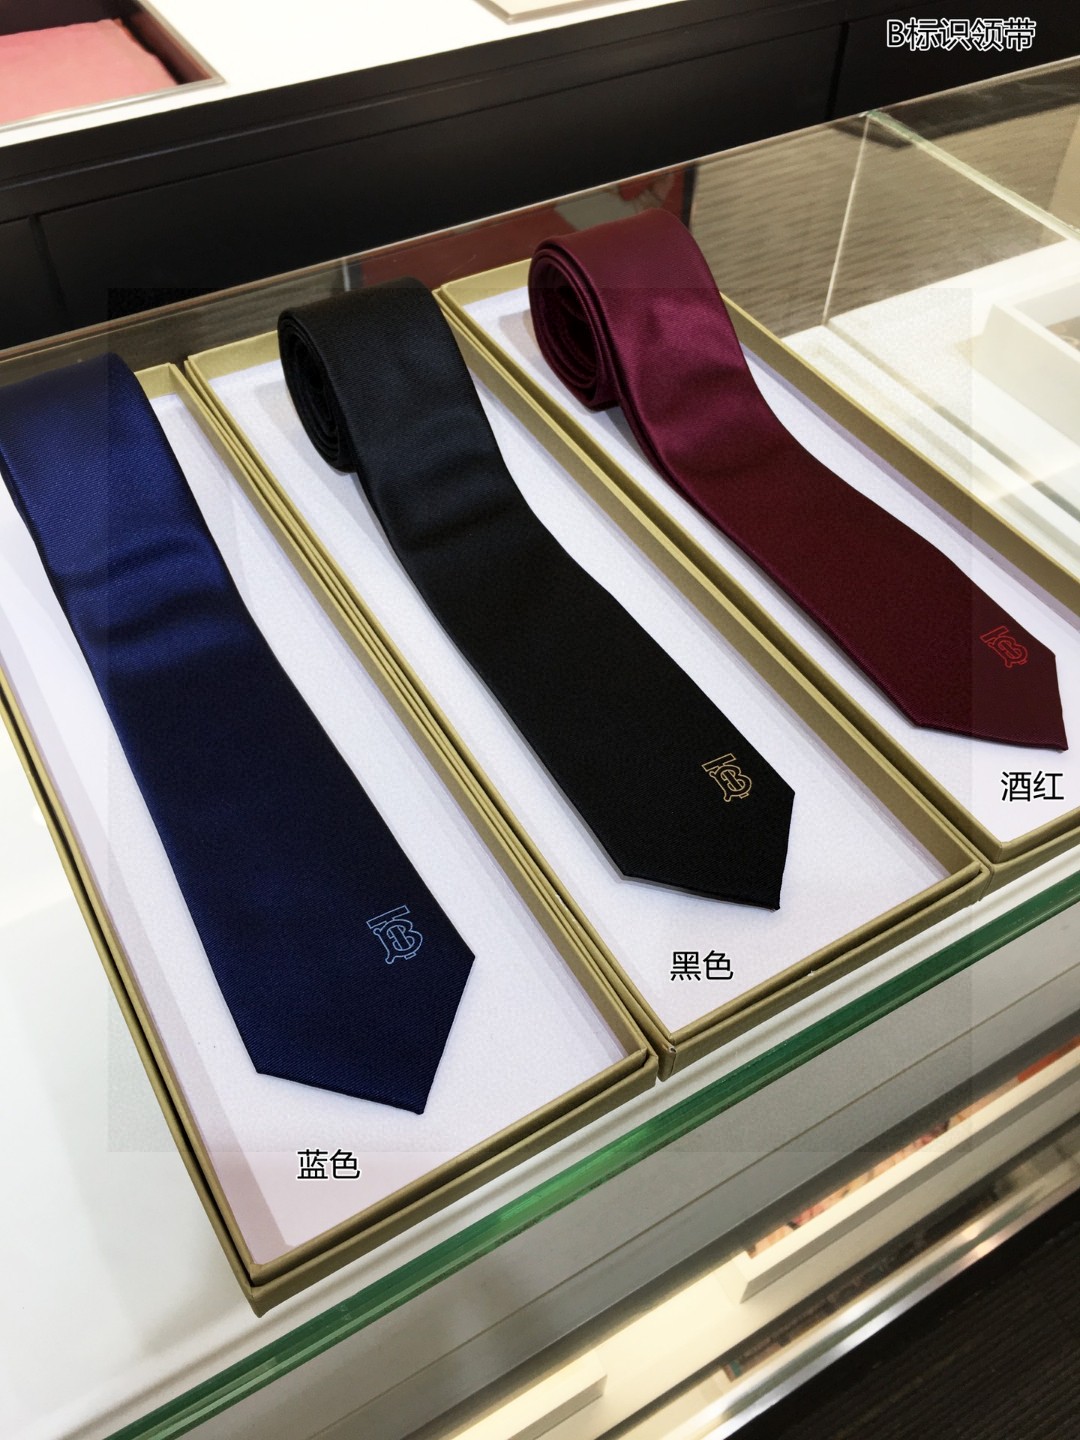 B家新款领带特价男士B标识领带稀有展现精湛手工与时尚优雅的理想选择这款采用B家最具标志性字母标示LOGO